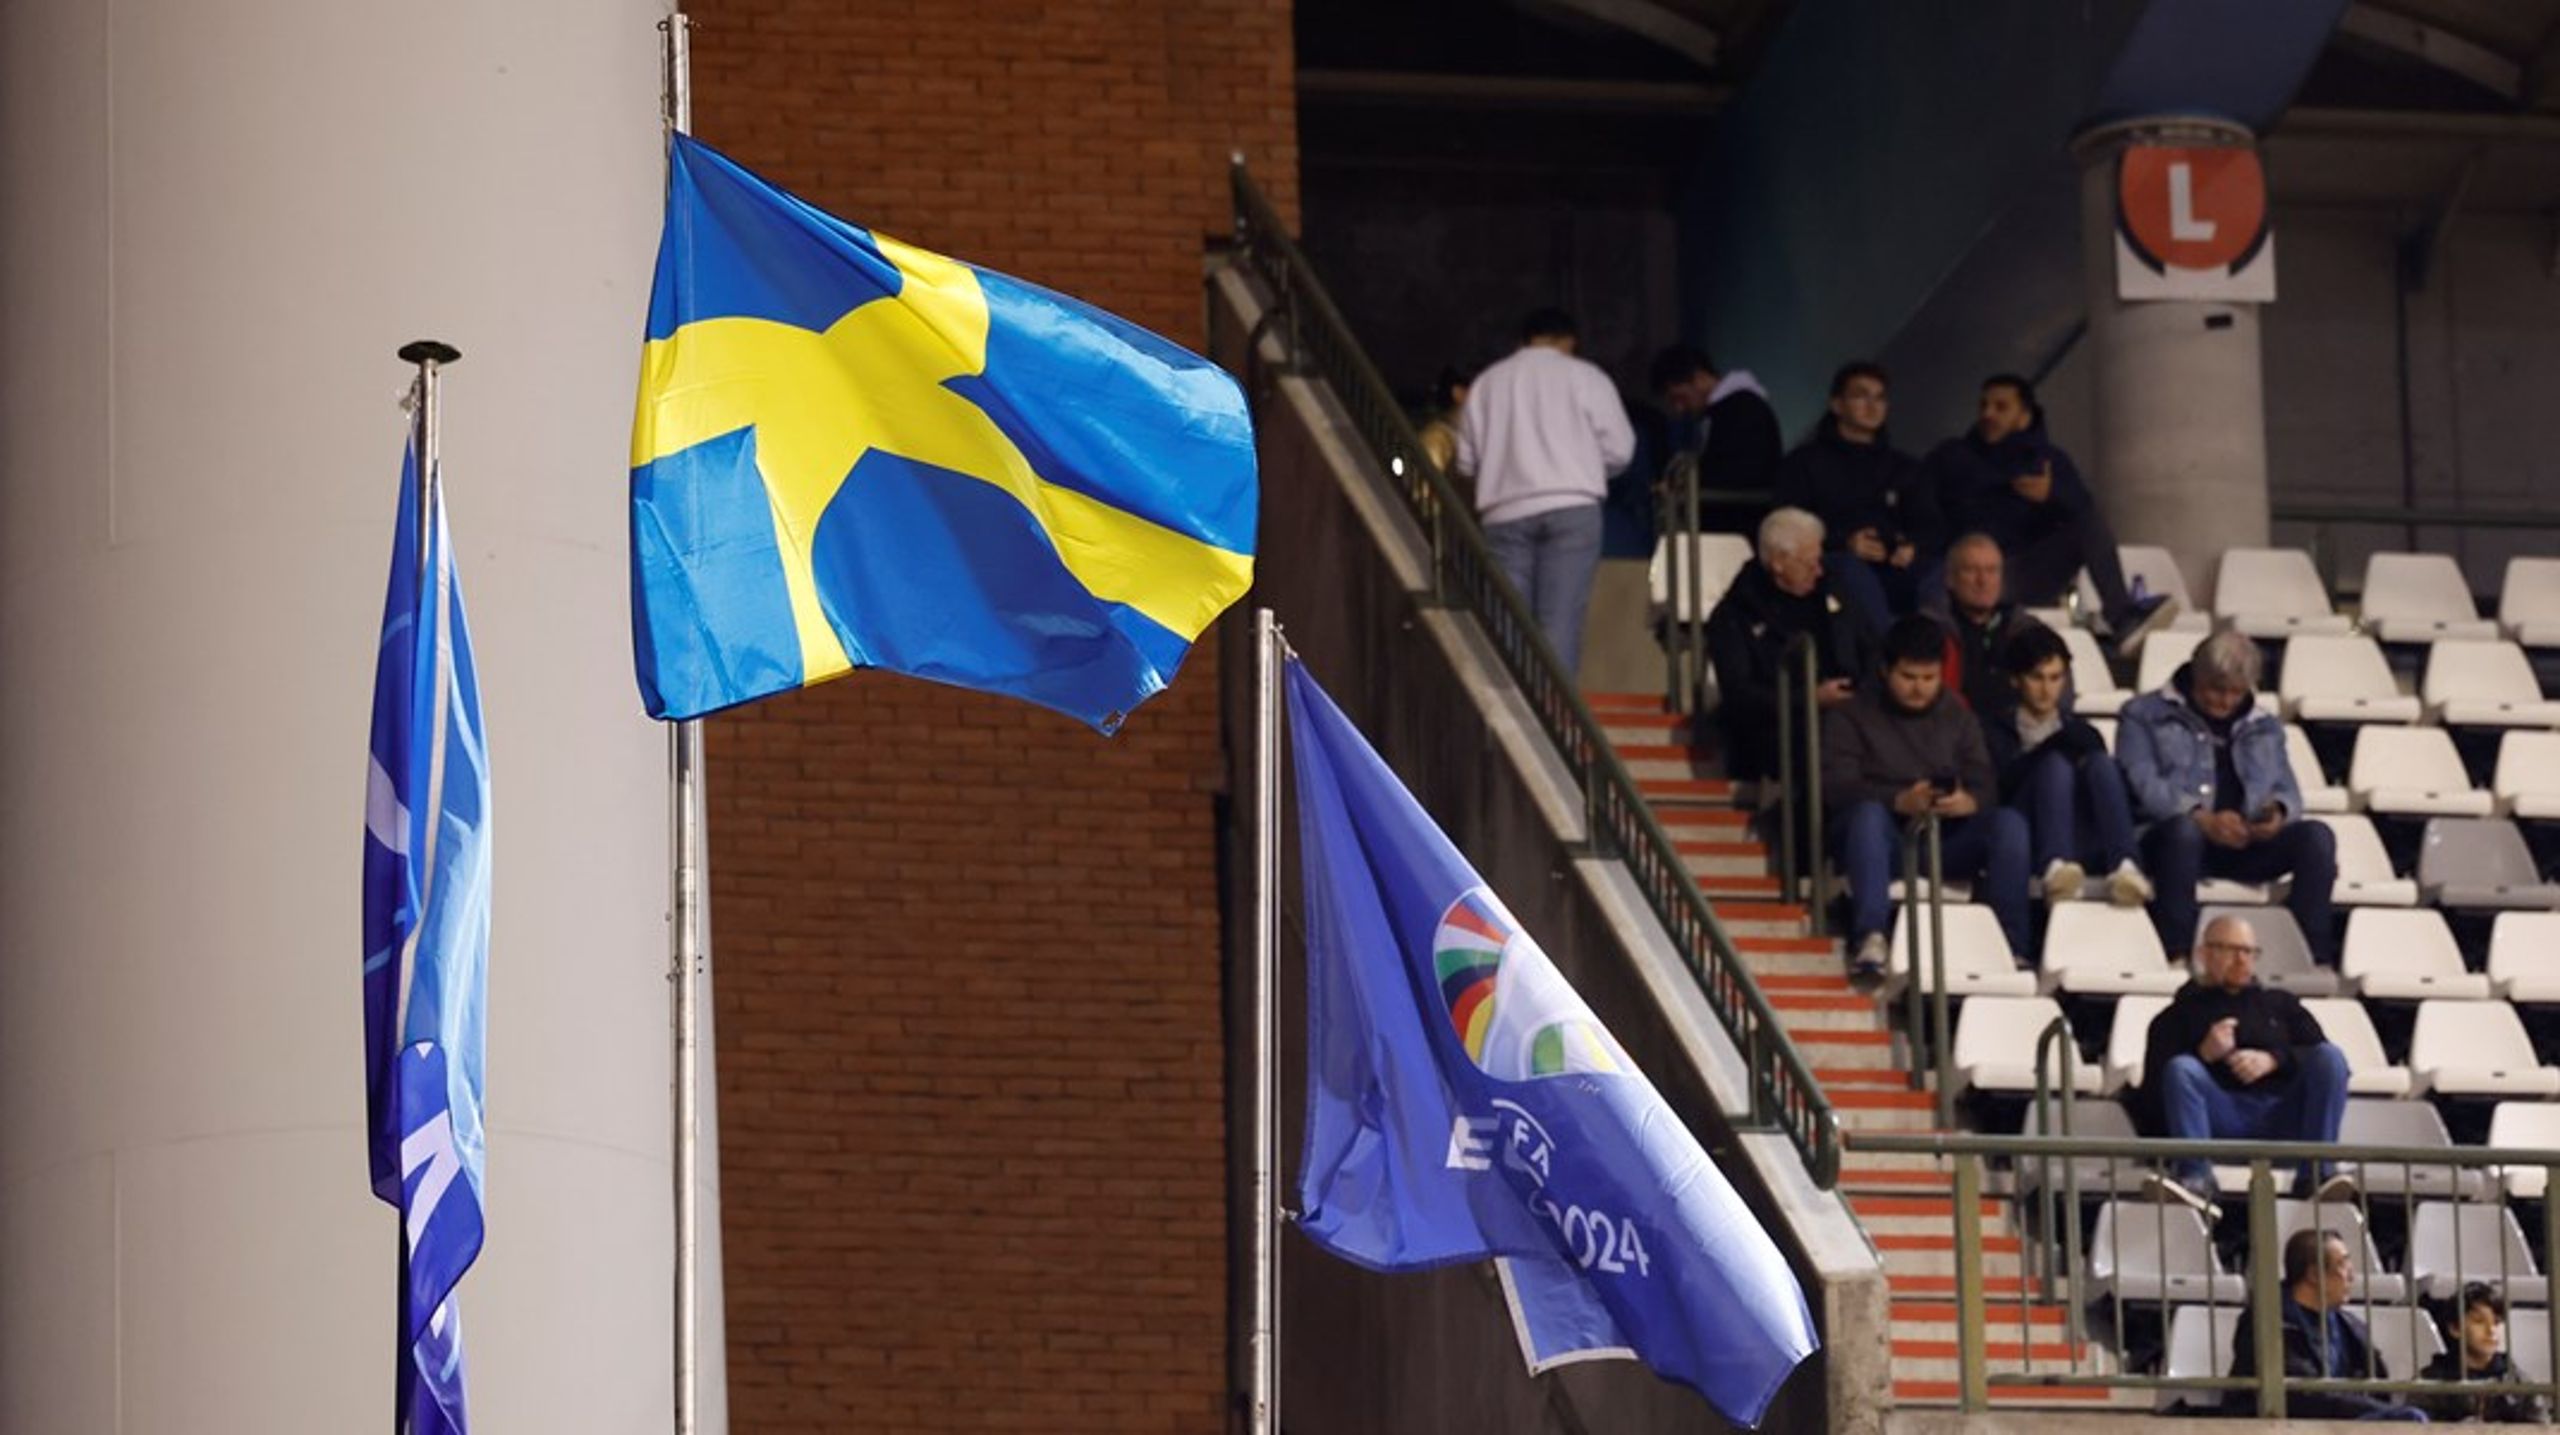 Fotbollsmatchen mellan Sverige och Belgien, som inleddes strax efter dödsskjutningen, avbröts i halvtid.